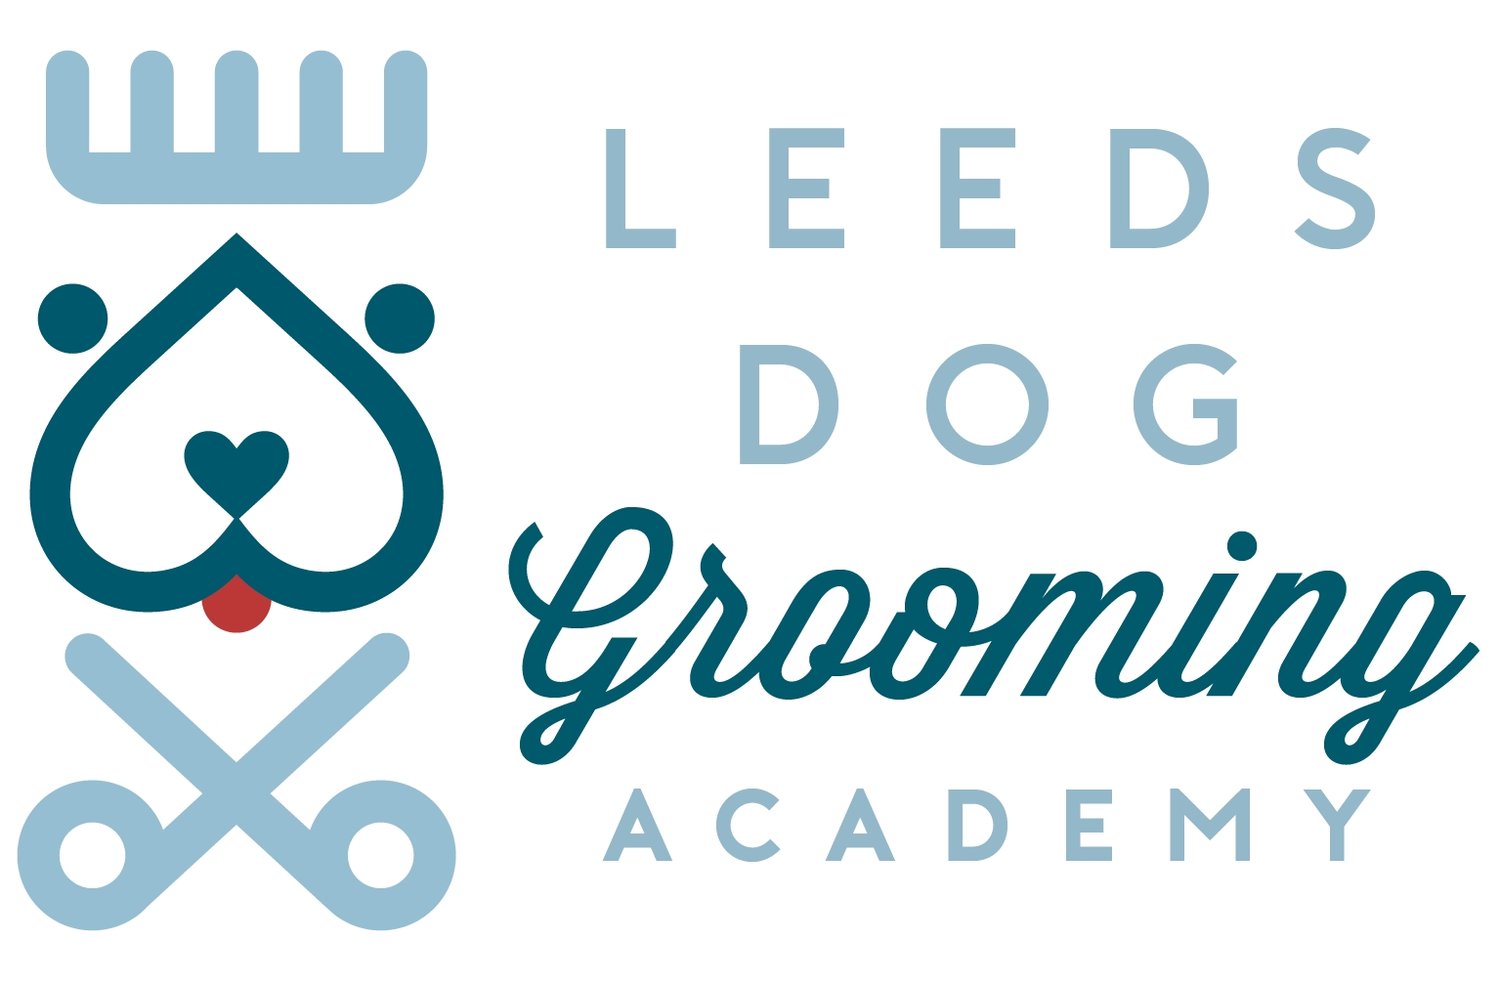 Leeds Dog Grooming Academy